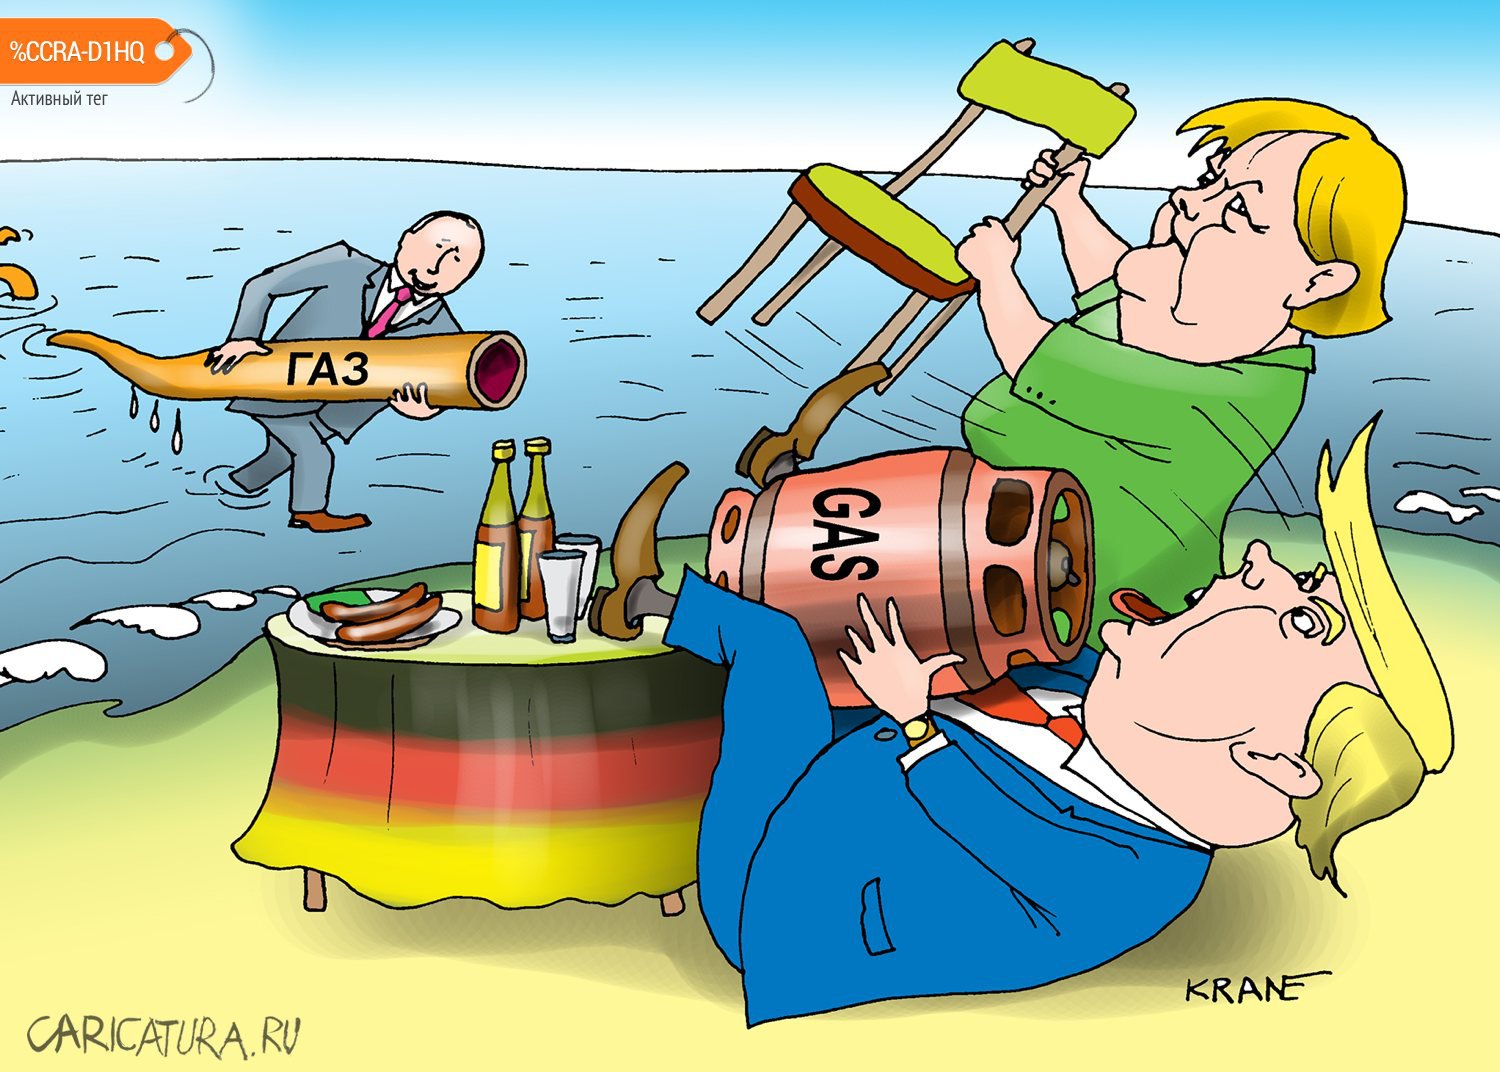 Карикатура "Мы защитим вас от дешевого газа", Евгений Кран